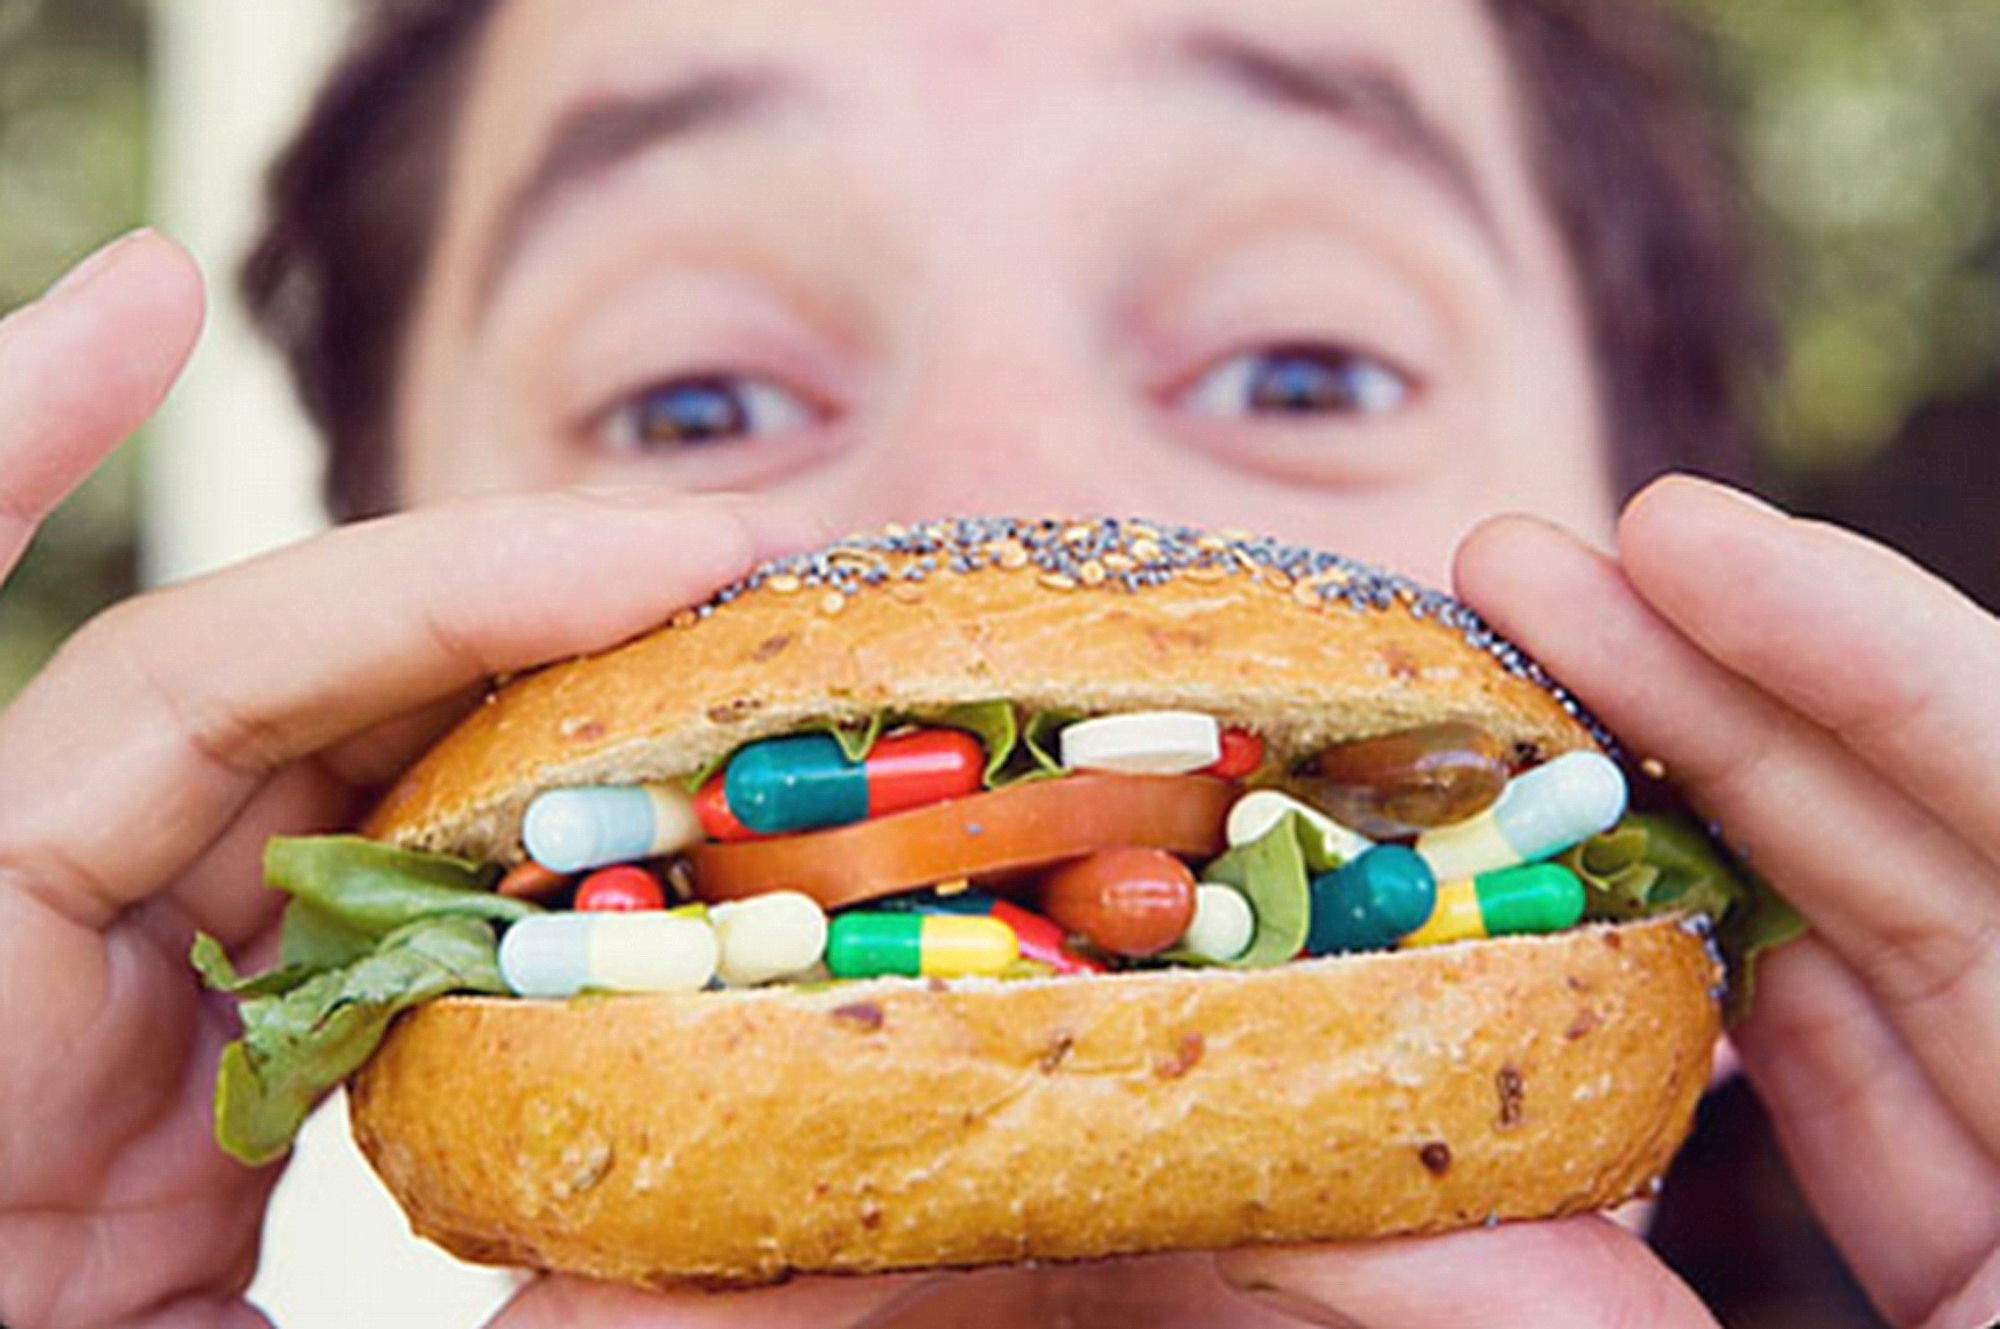 Sarebbe un rimedio efficiente per combattere l'obesità: una pillola che ci fa sentire come se avessimo mangiato 